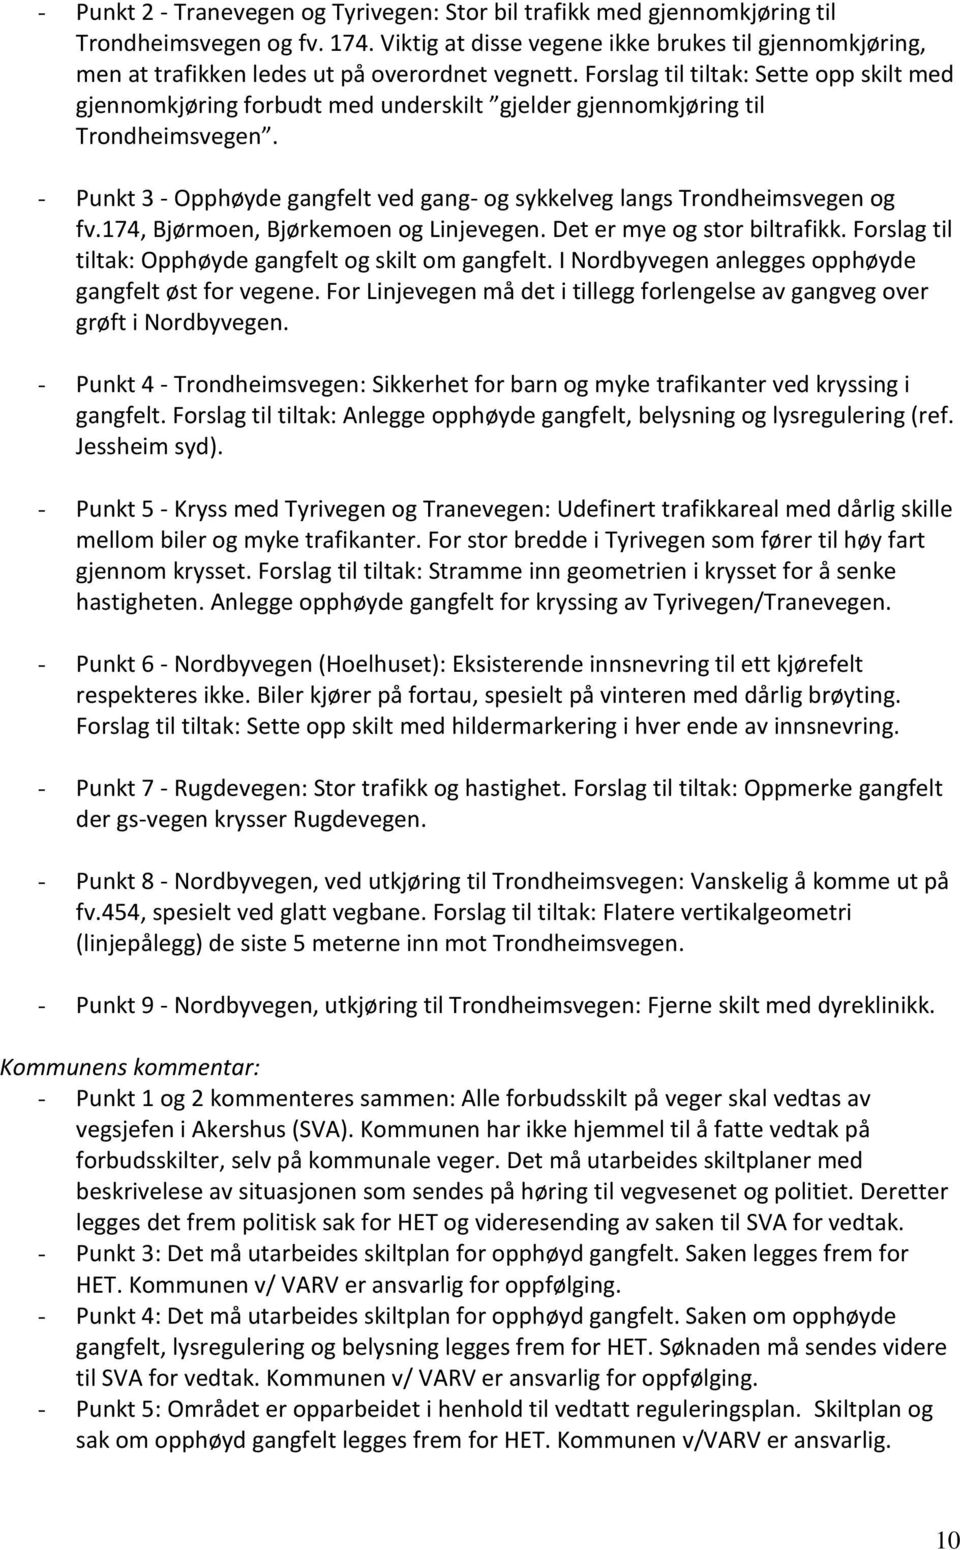 Forslag til tiltak: Sette opp skilt med gjennomkjøring forbudt med underskilt gjelder gjennomkjøring til Trondheimsvegen.